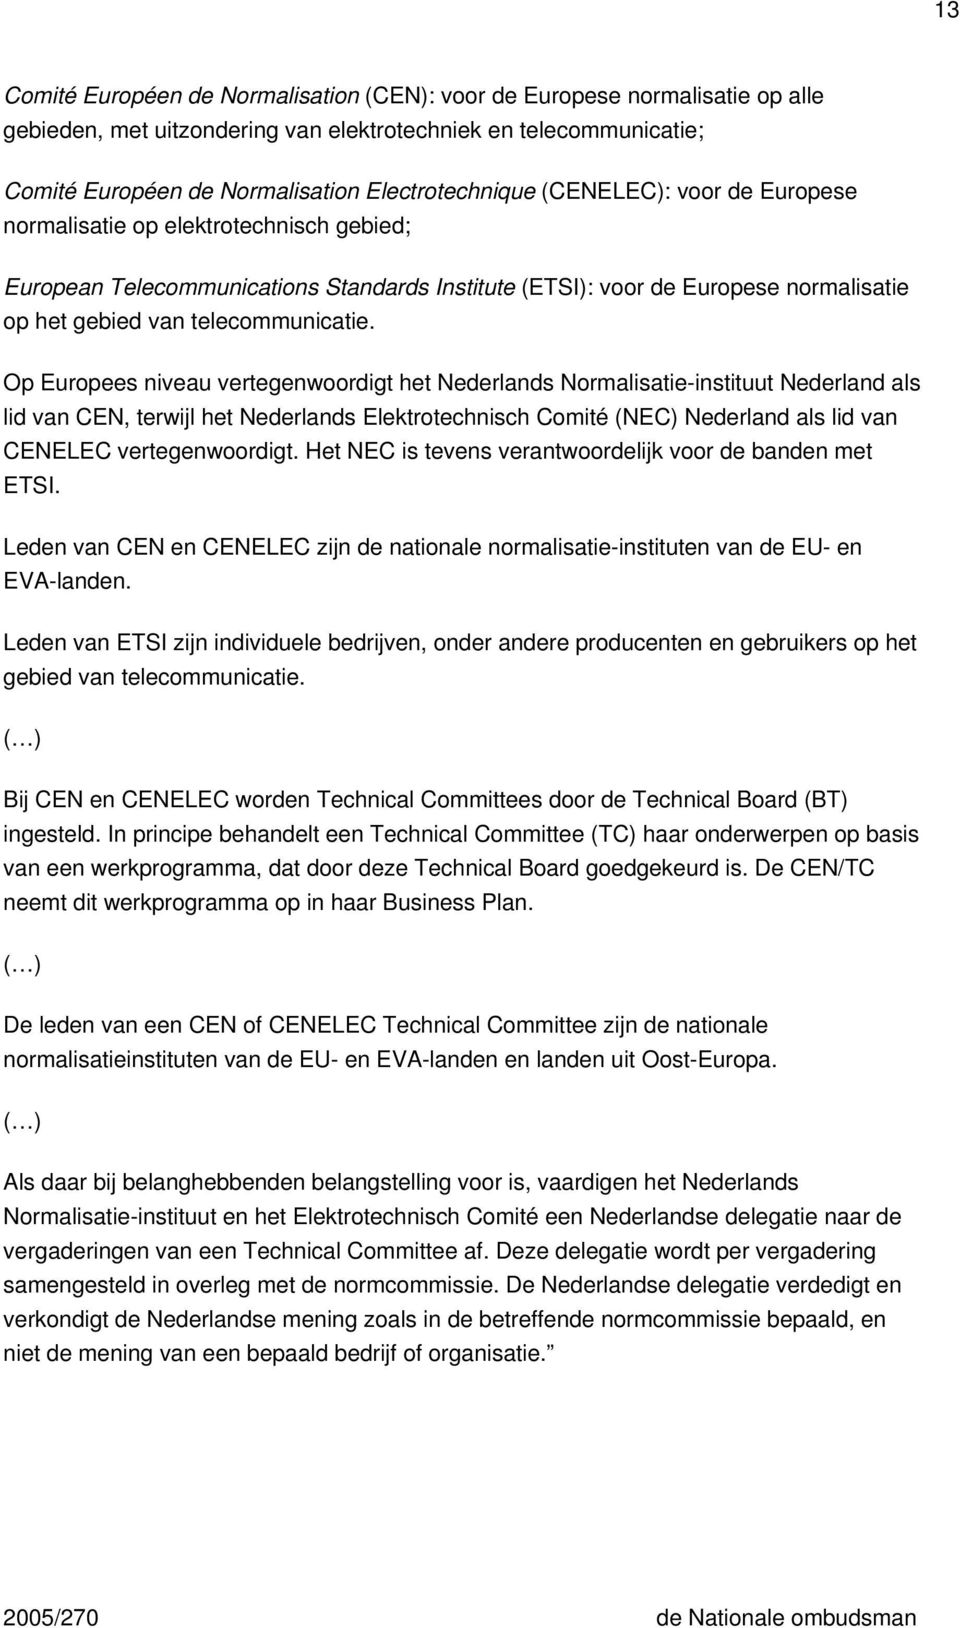 Op Europees niveau vertegenwoordigt het Nederlands Normalisatie-instituut Nederland als lid van CEN, terwijl het Nederlands Elektrotechnisch Comité (NEC) Nederland als lid van CENELEC